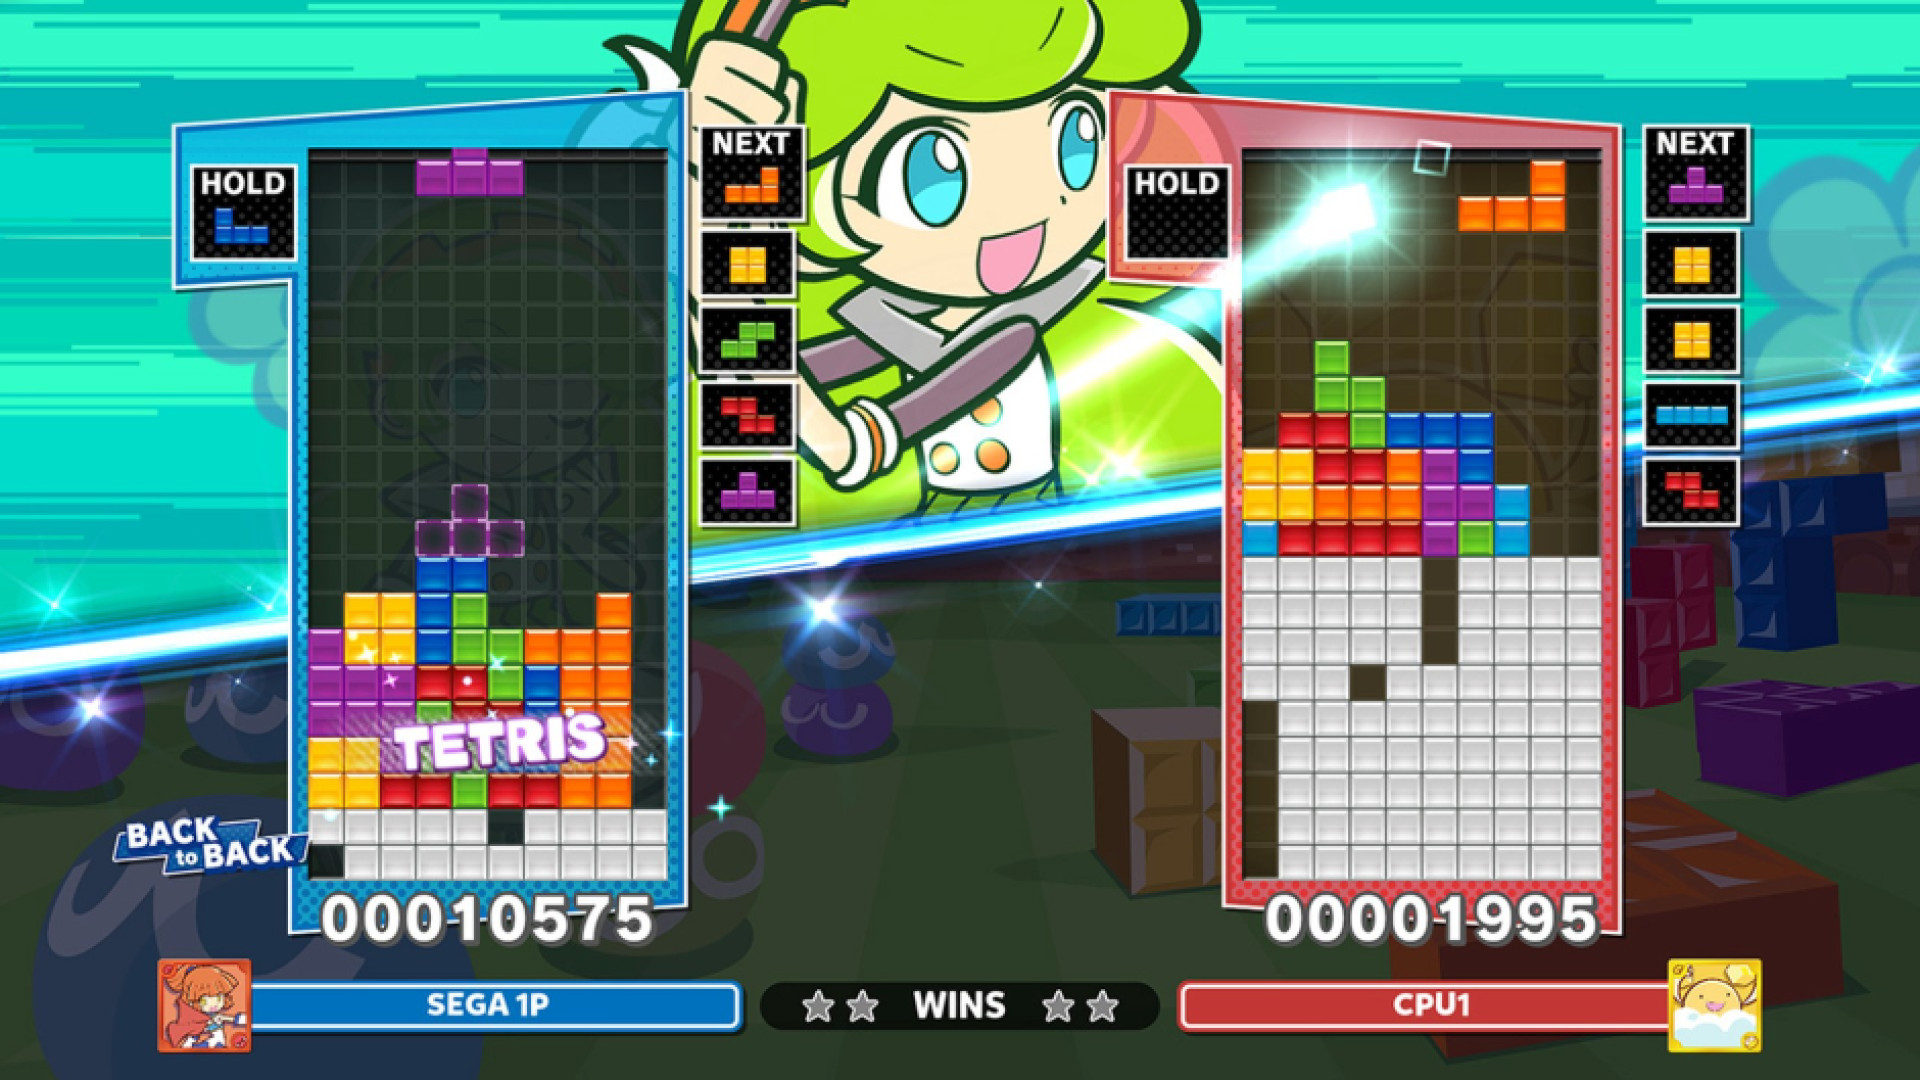 Puyo-Puyo-Tetris 2